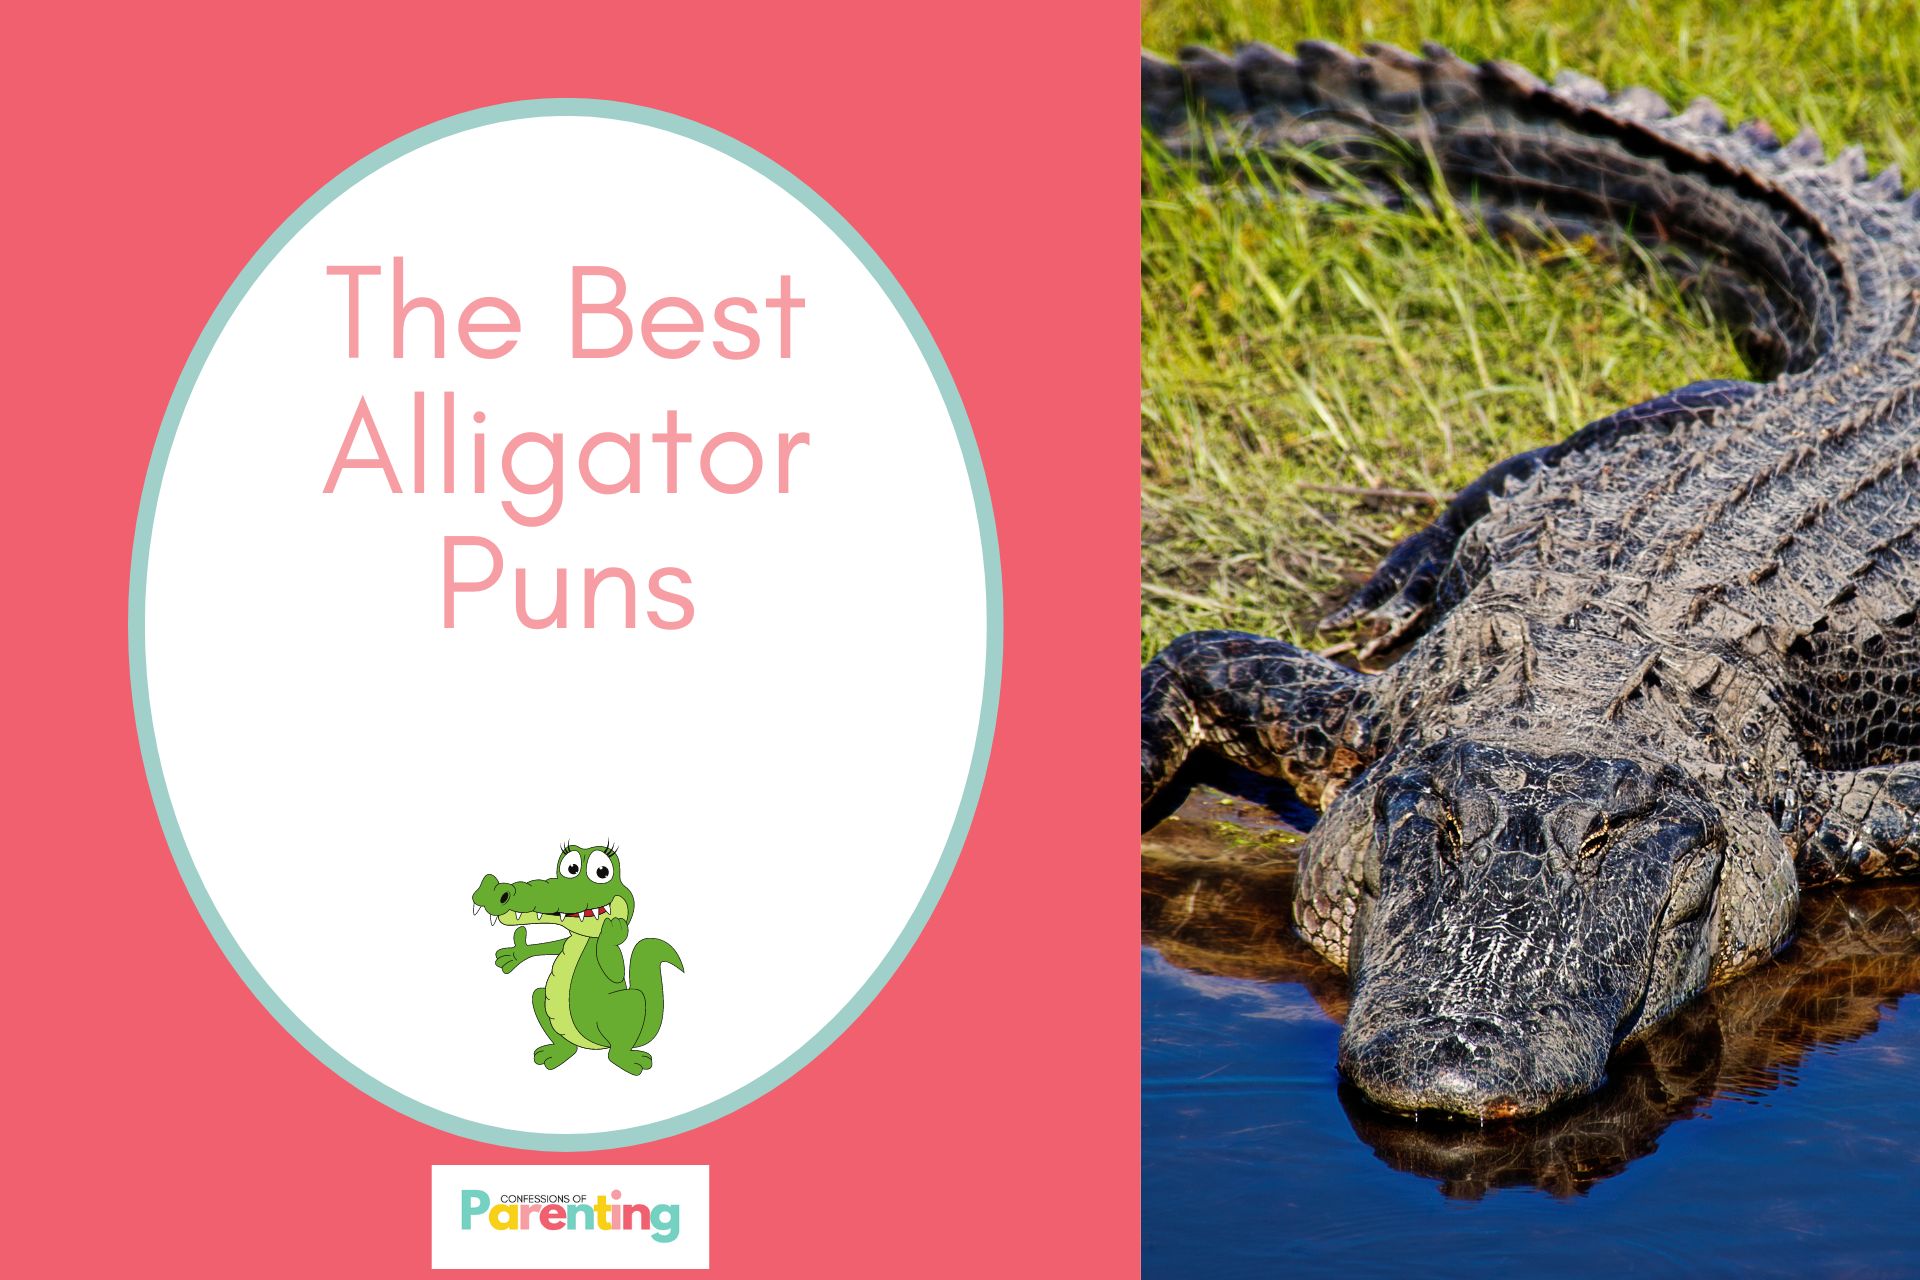 Hơn 70 câu chơi chữ hay nhất về cá sấu mang lại tiếng cười